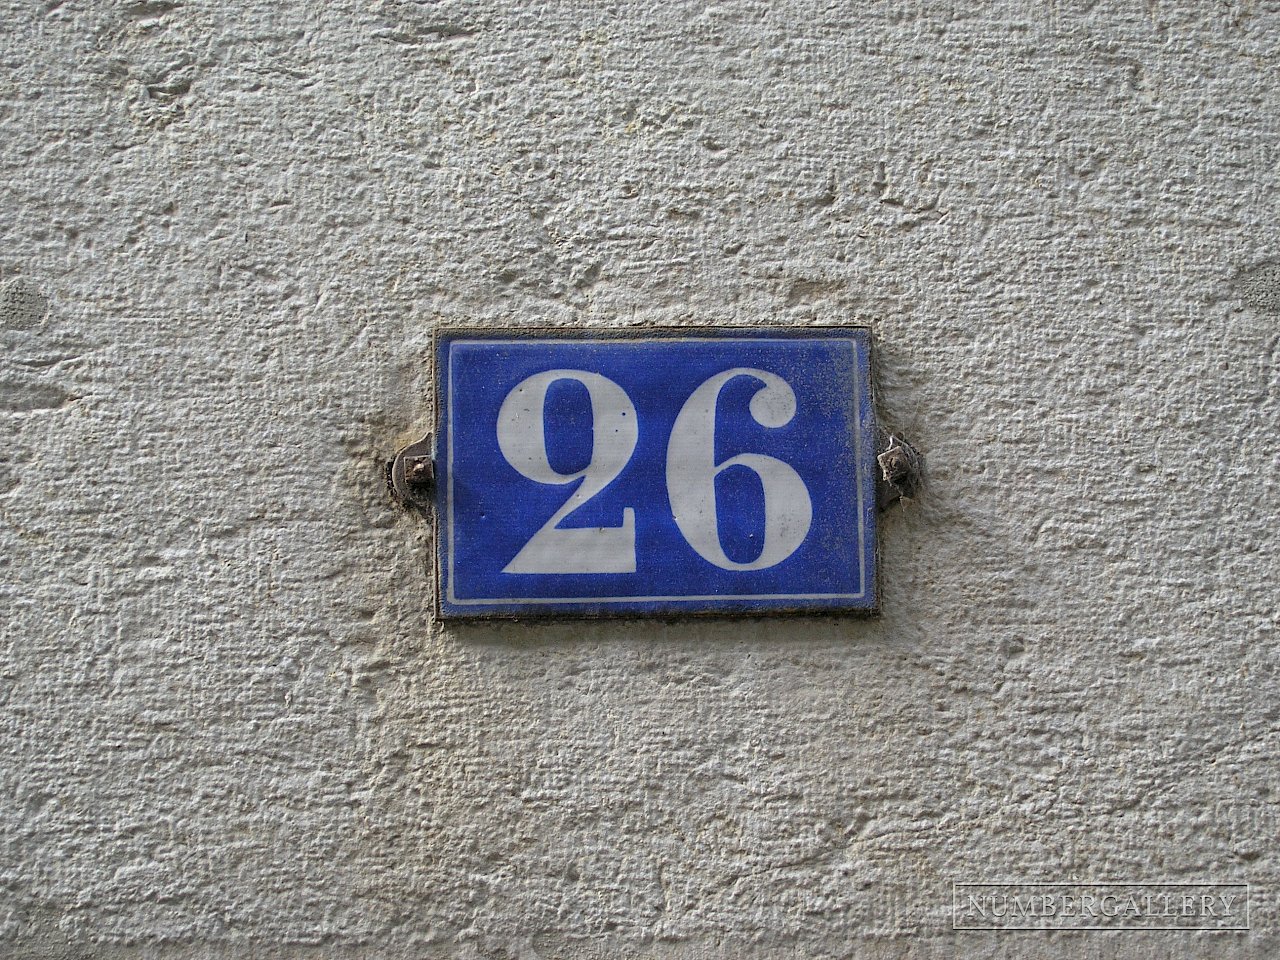 Hausnummer in Genf / Genève